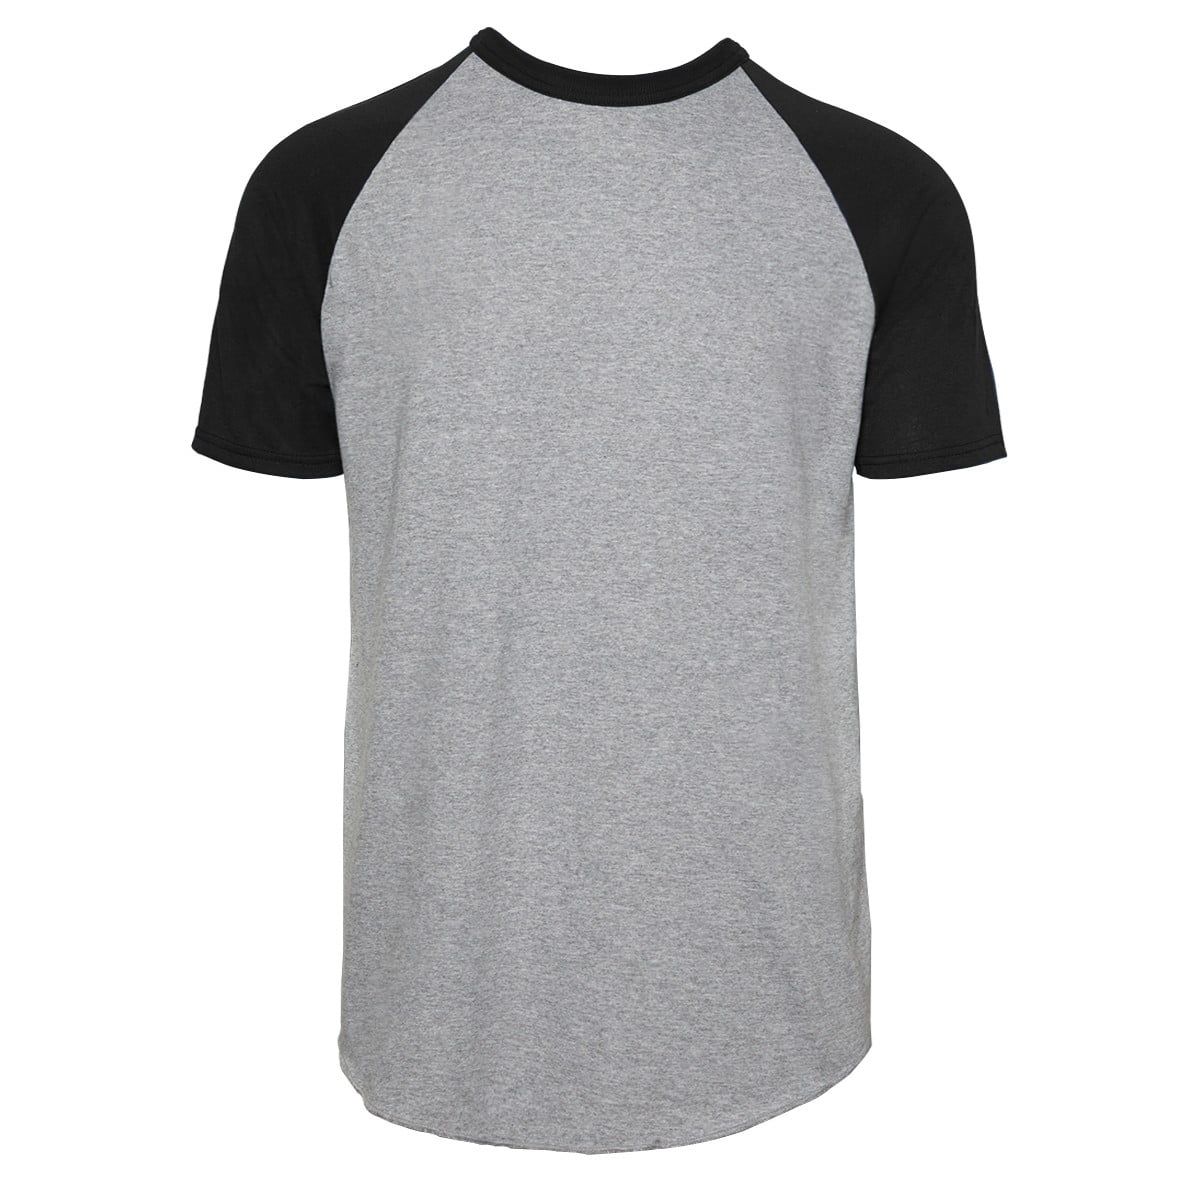 Soffe Men's Short Sleeve Baseball T-Shirt - 208M - Walmart.com